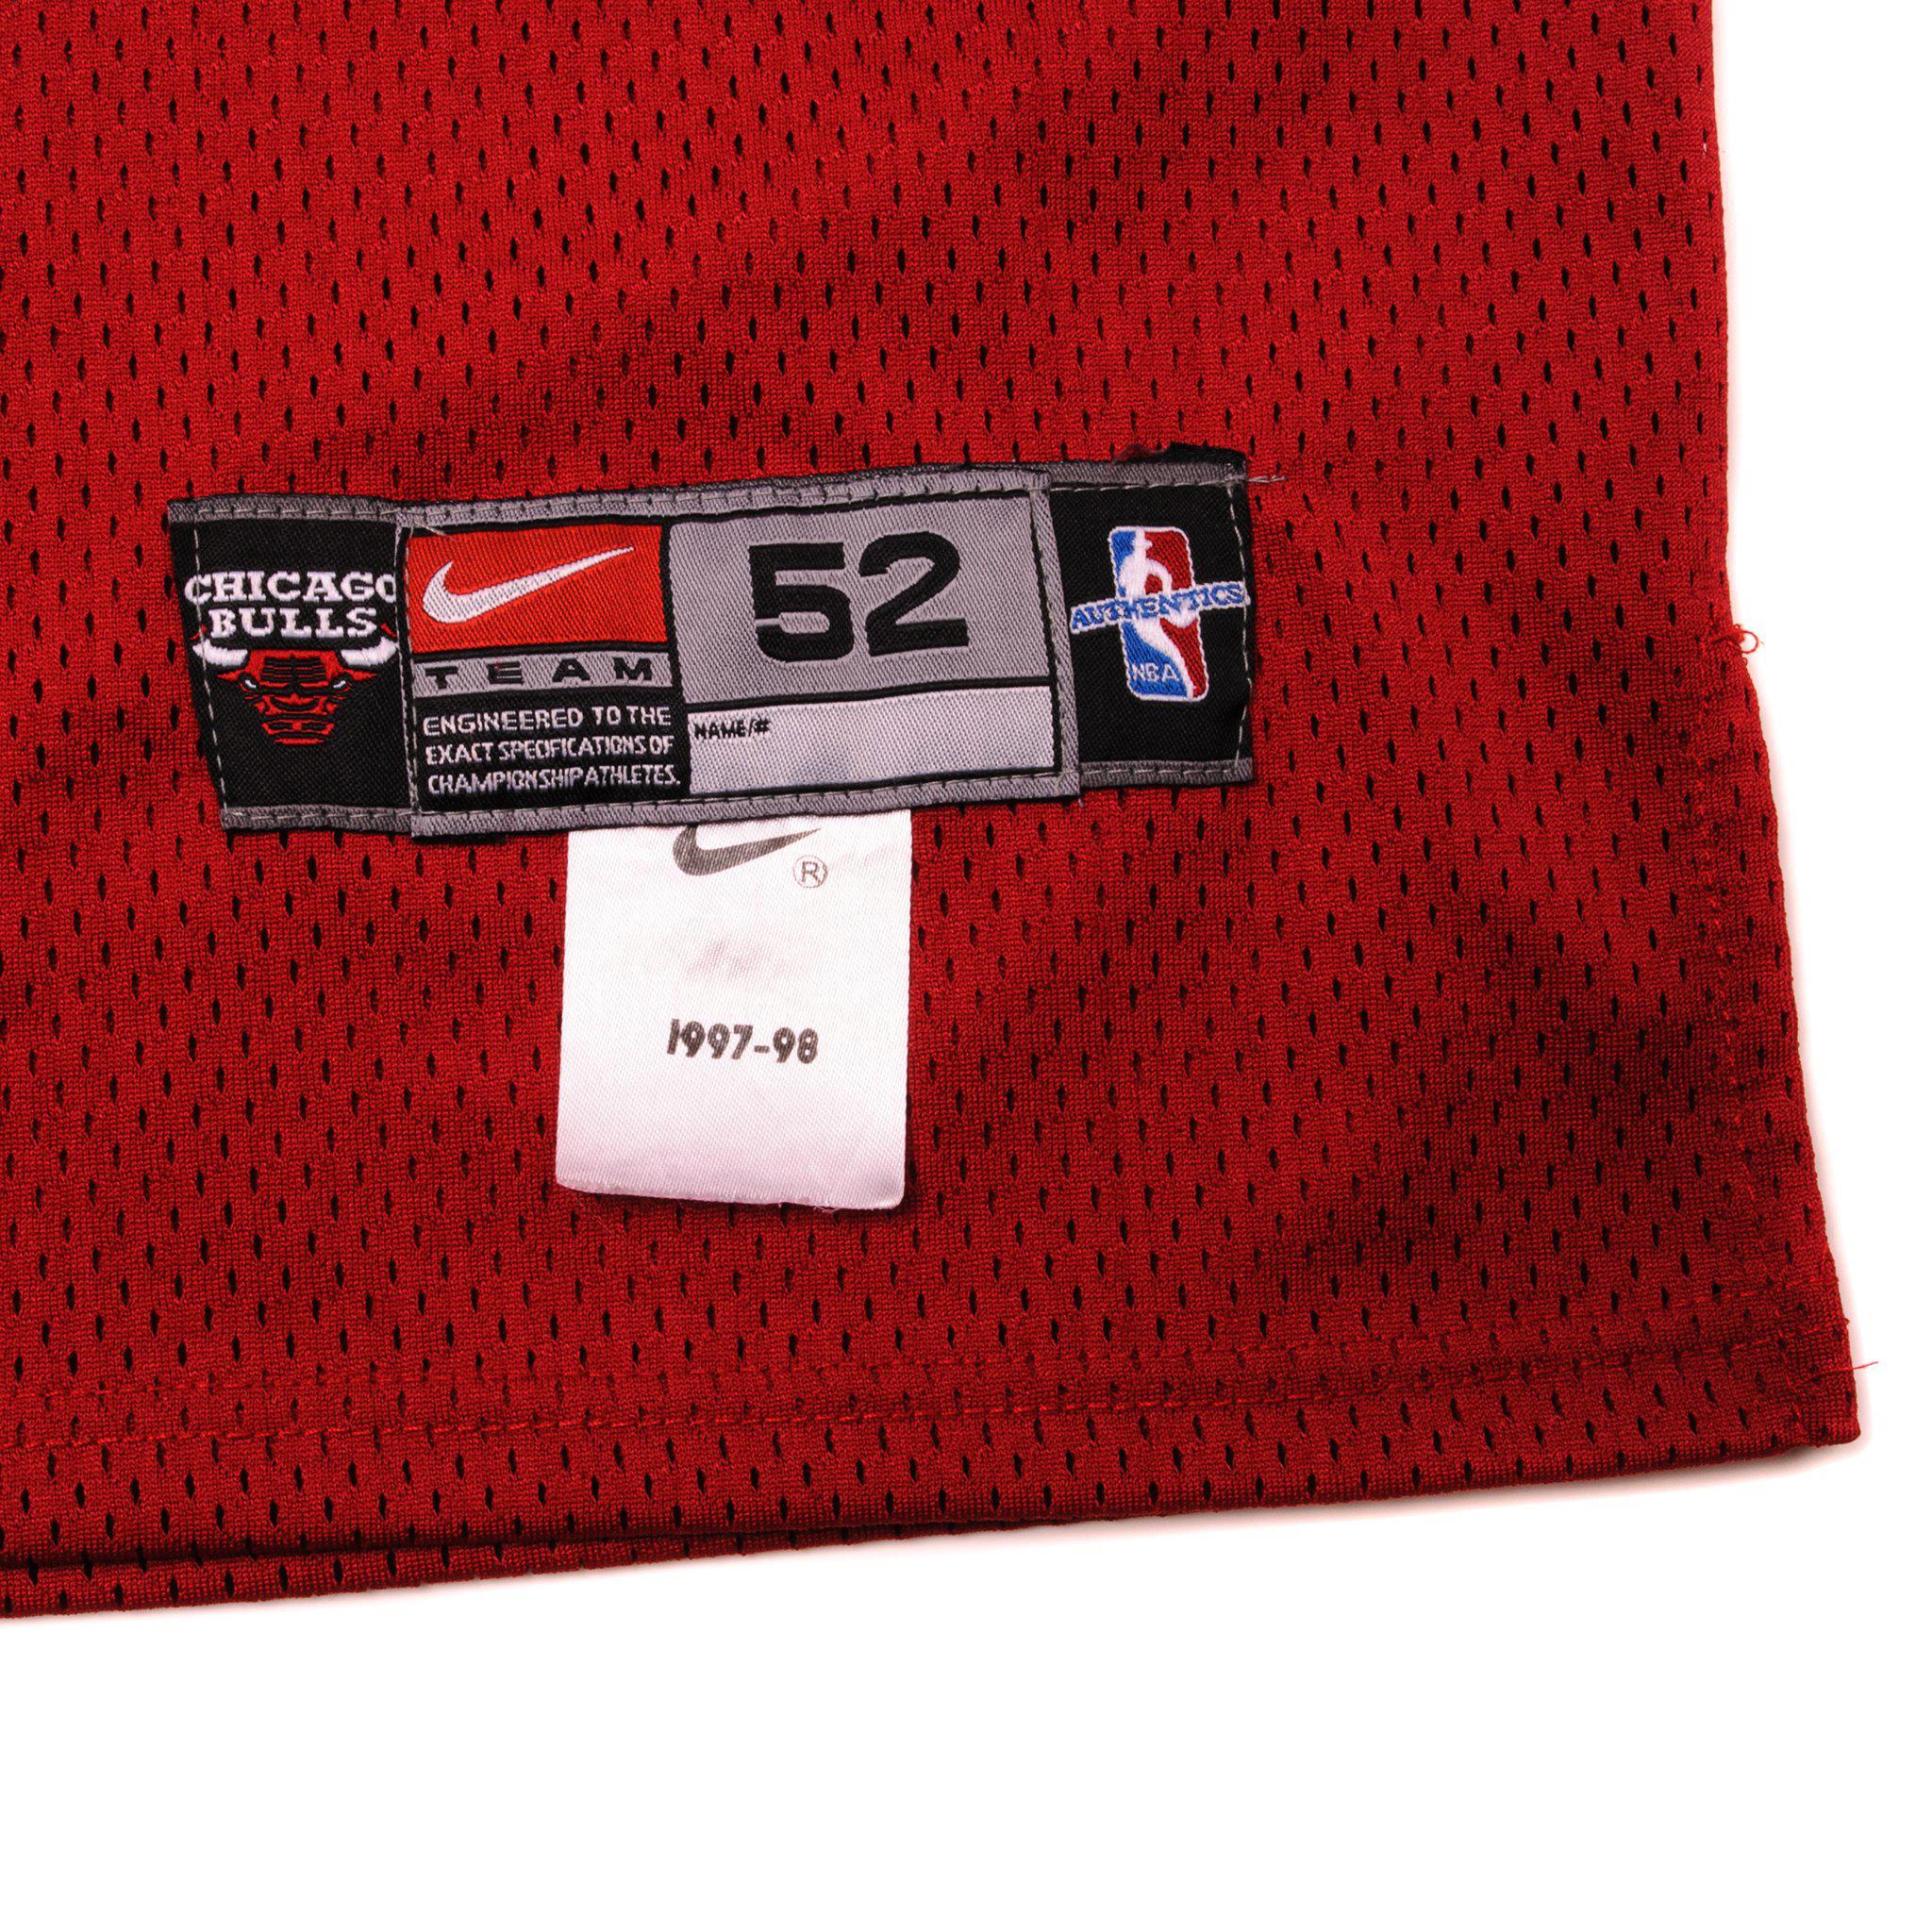 Original Nike 1997-98 Michael Jordan 23 Chicago Bulls Black 